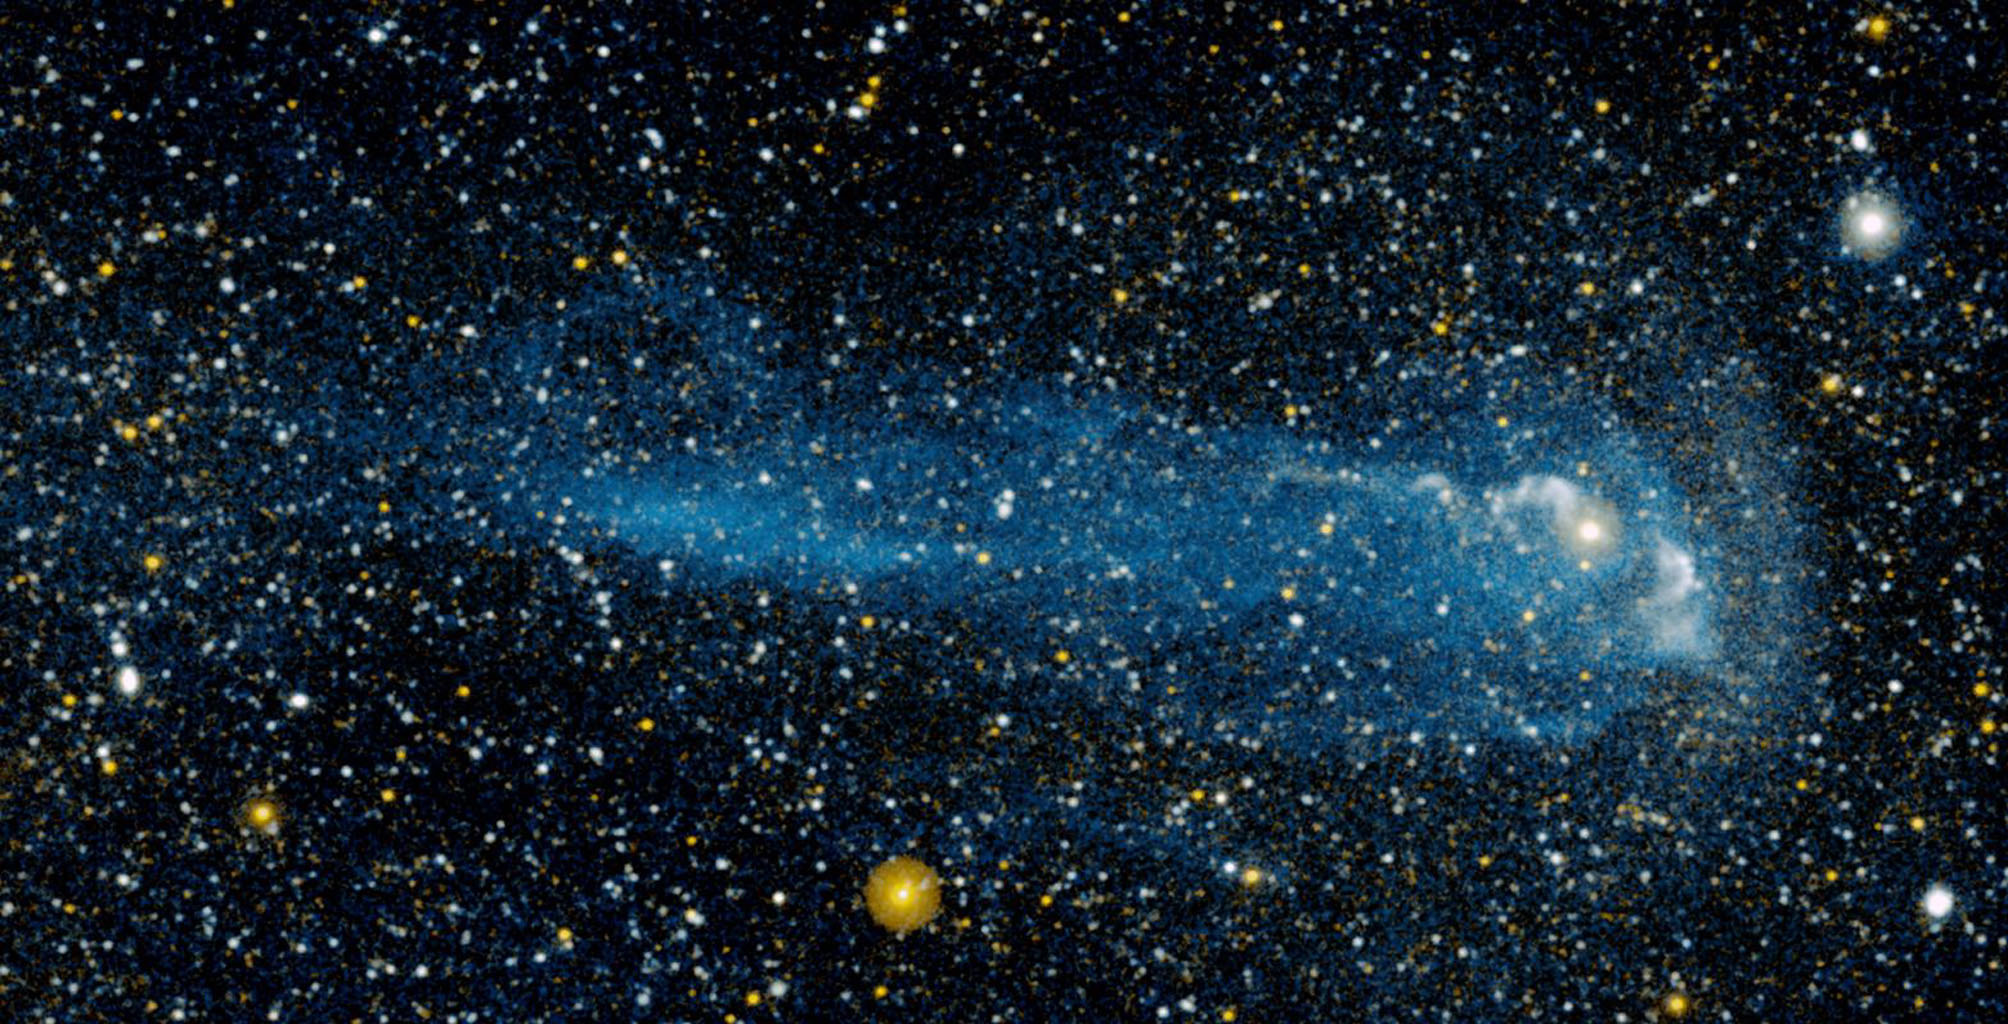 große sternentapete,weltraum,galaxis,astronomisches objekt,atmosphäre,universum